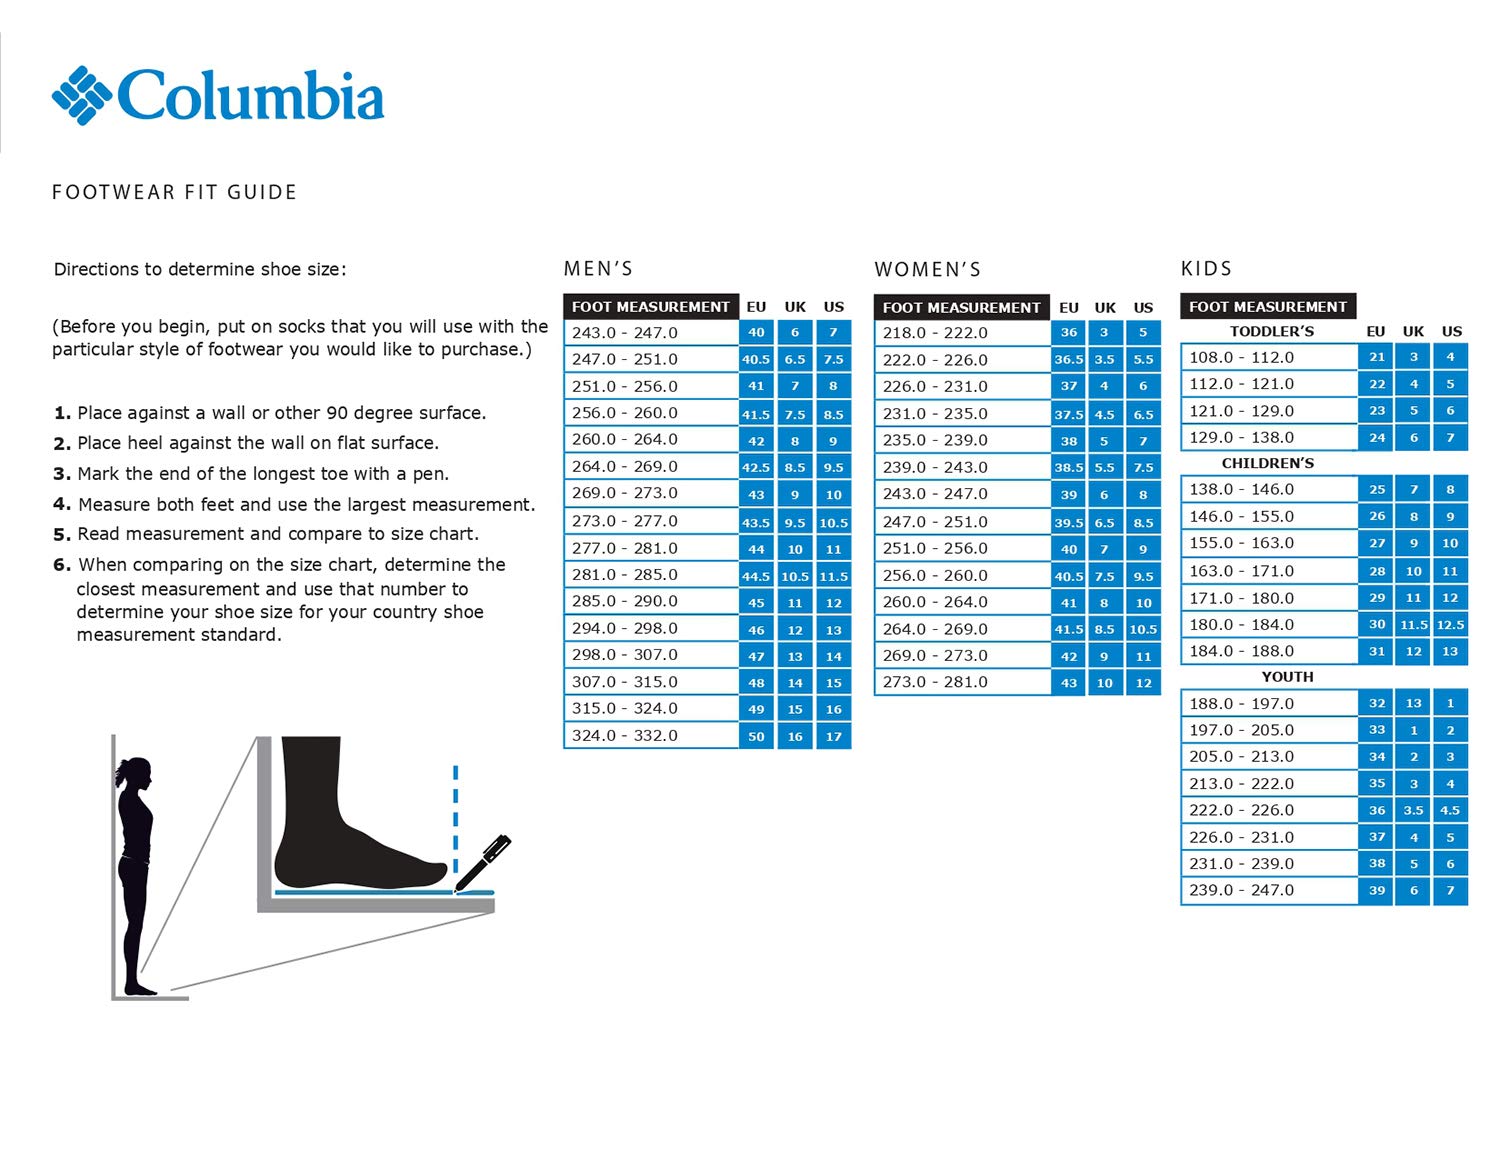 Columbia Men's Redmond V2 Mid Waterproof Boot Hiking Shoe